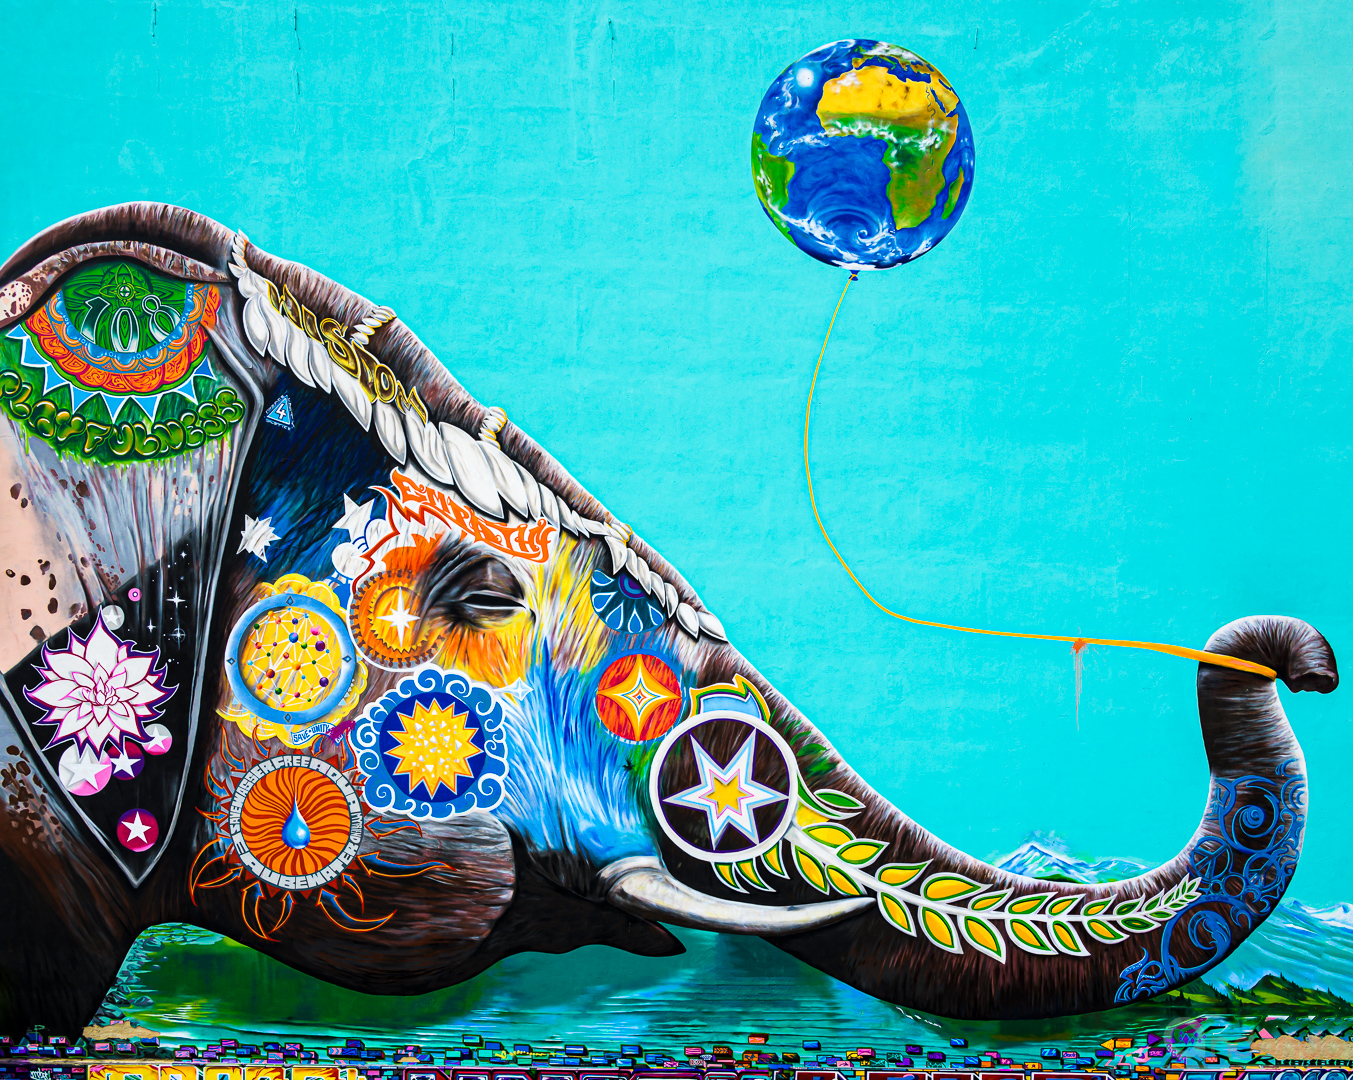 Berlin Street Art: Elefant mit Erdkugel (Jadore Tong)